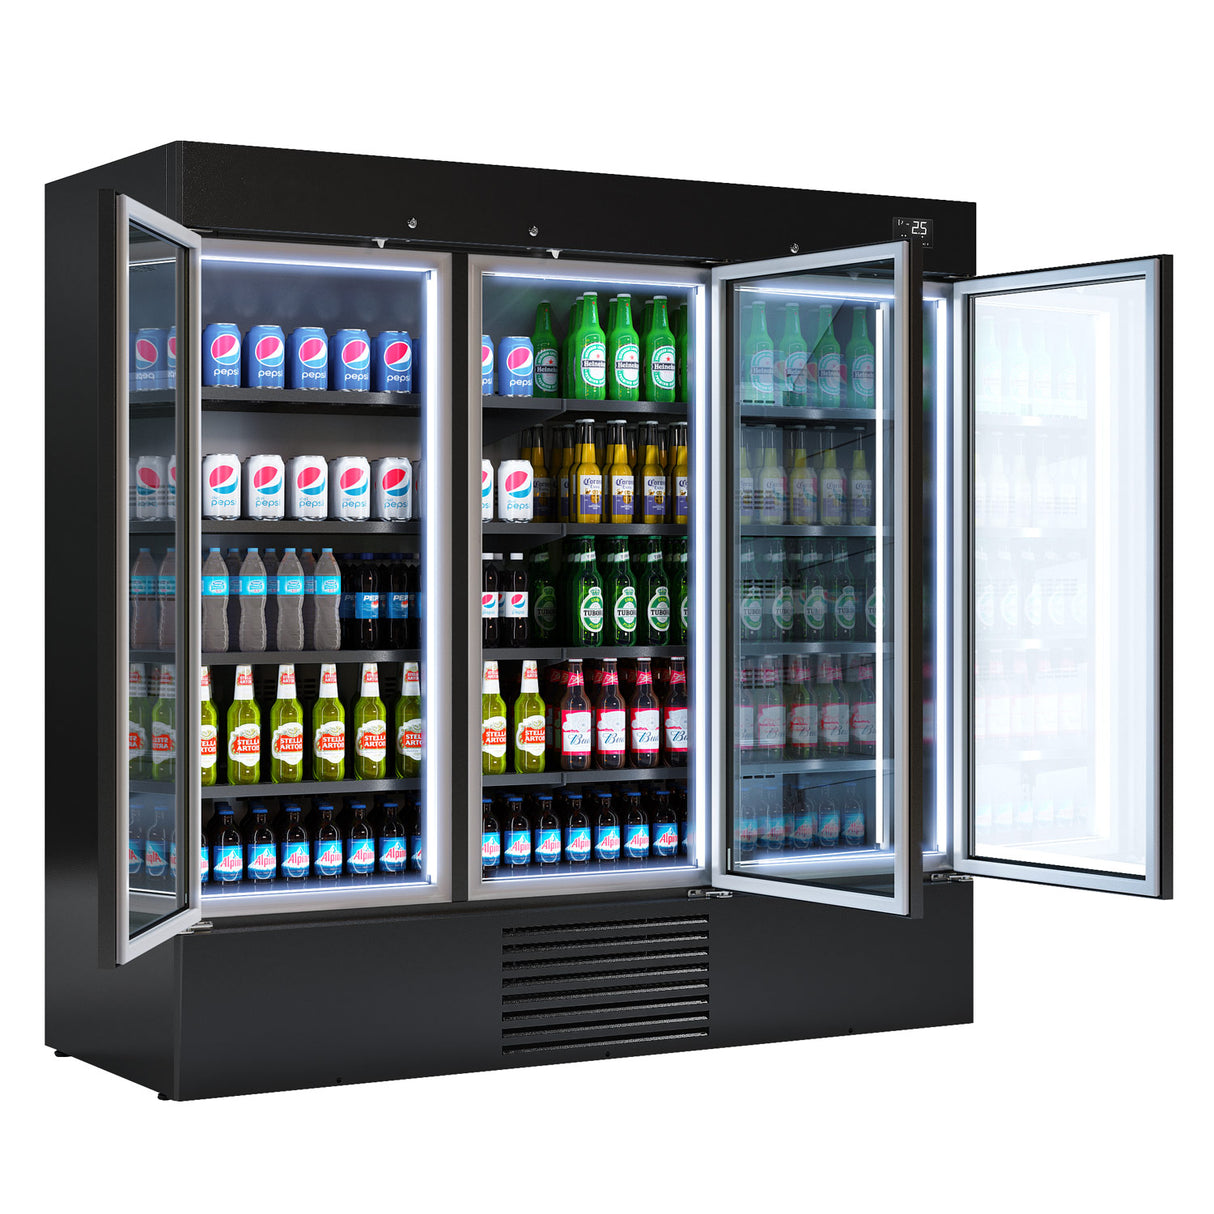 Flaskekjøleskab - 2030 liter - med 2 dører - sort